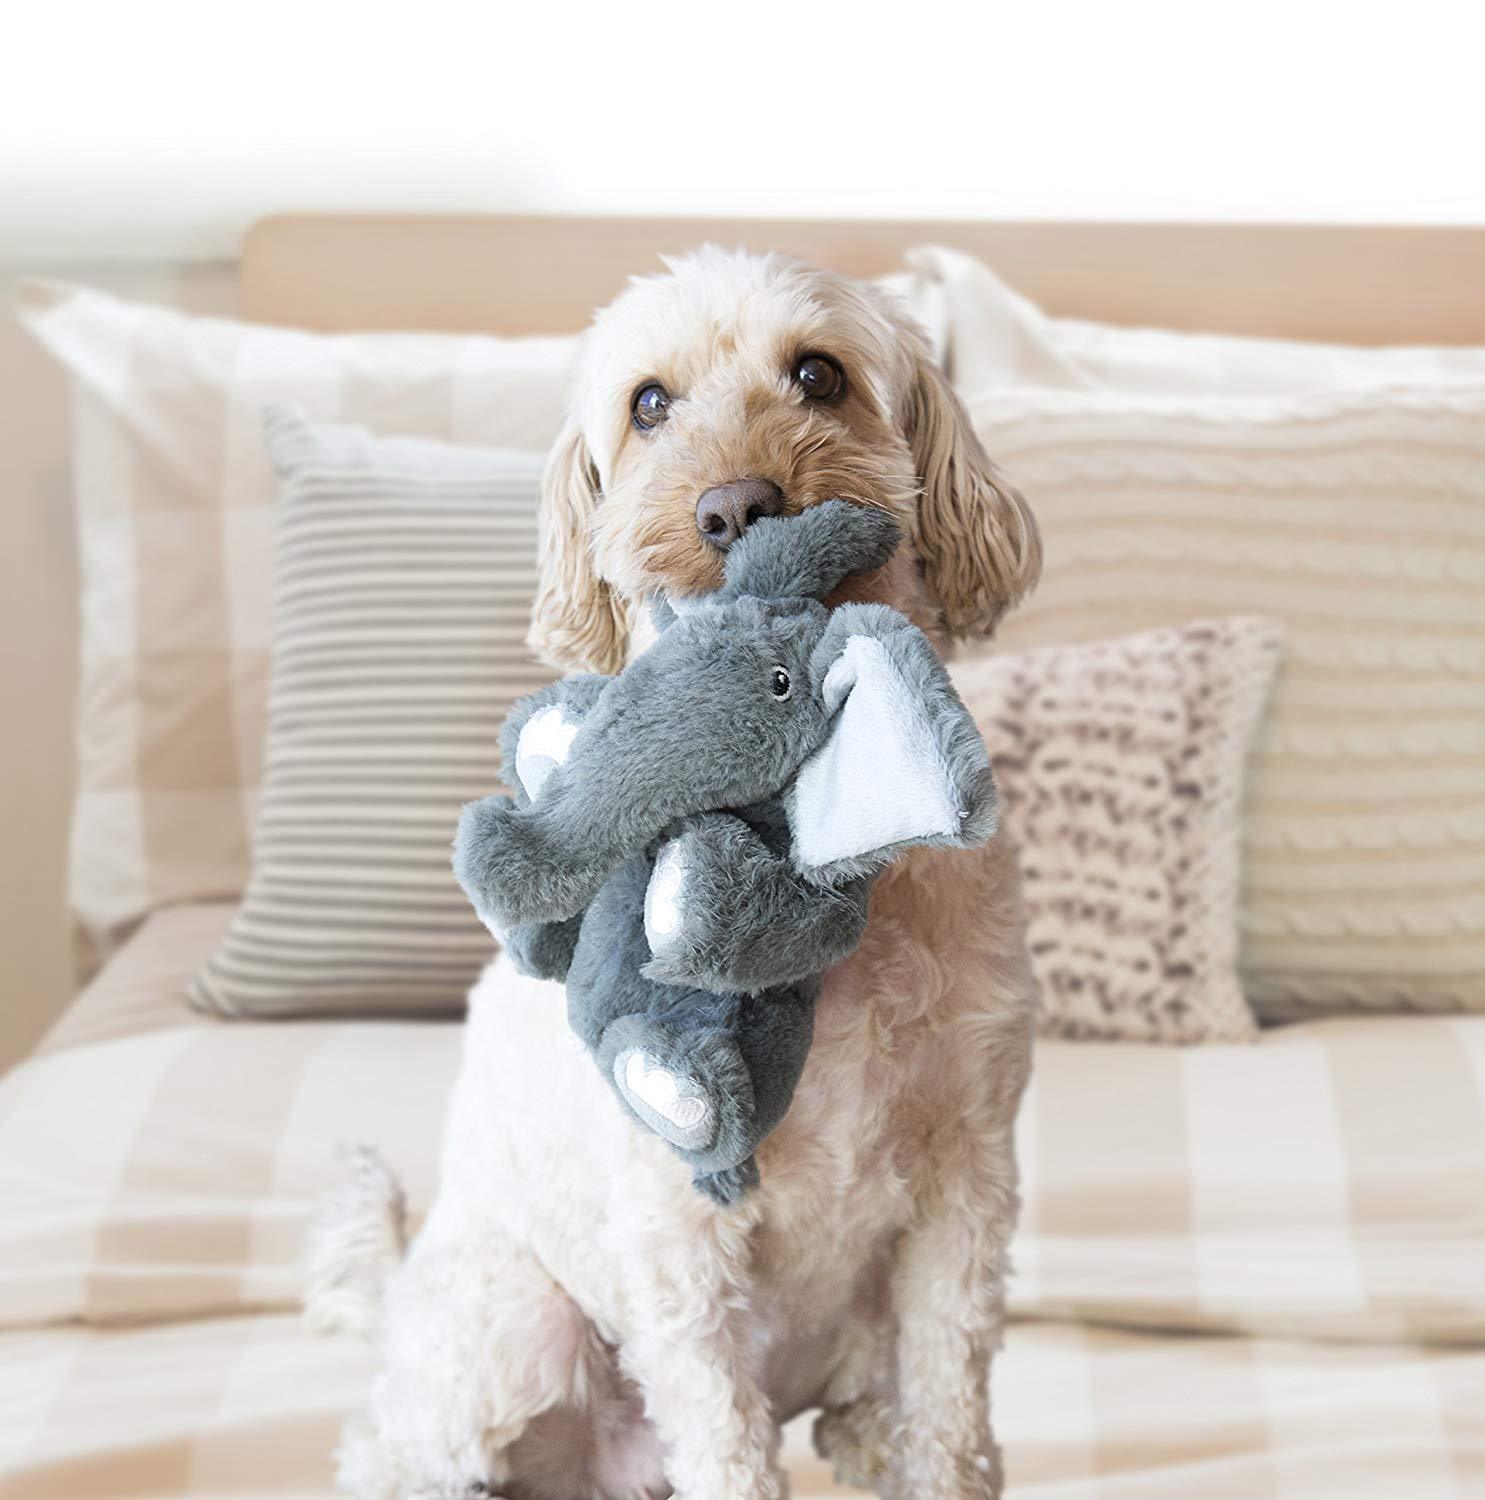 3 x KONG Comfort Kiddos Securty Elephant Plush Dog Toy - Large image 0